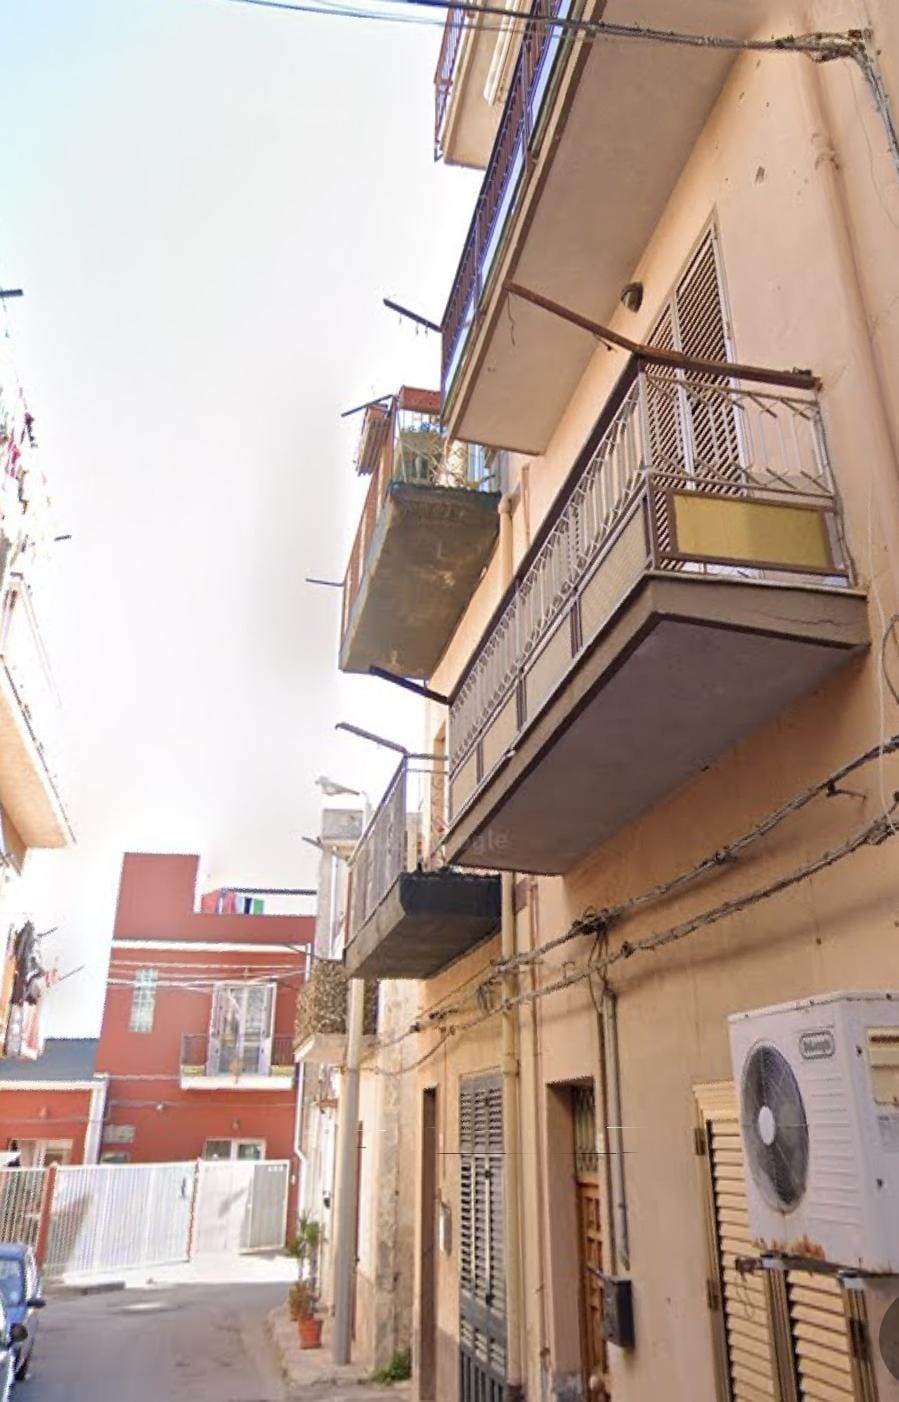 Zona Corso dei Mille - Guarnaschelli in Via Francesco Milo Guggino, proponiamo in vendita appartamento di 58mq circa posto al 1° piano di una piccola 